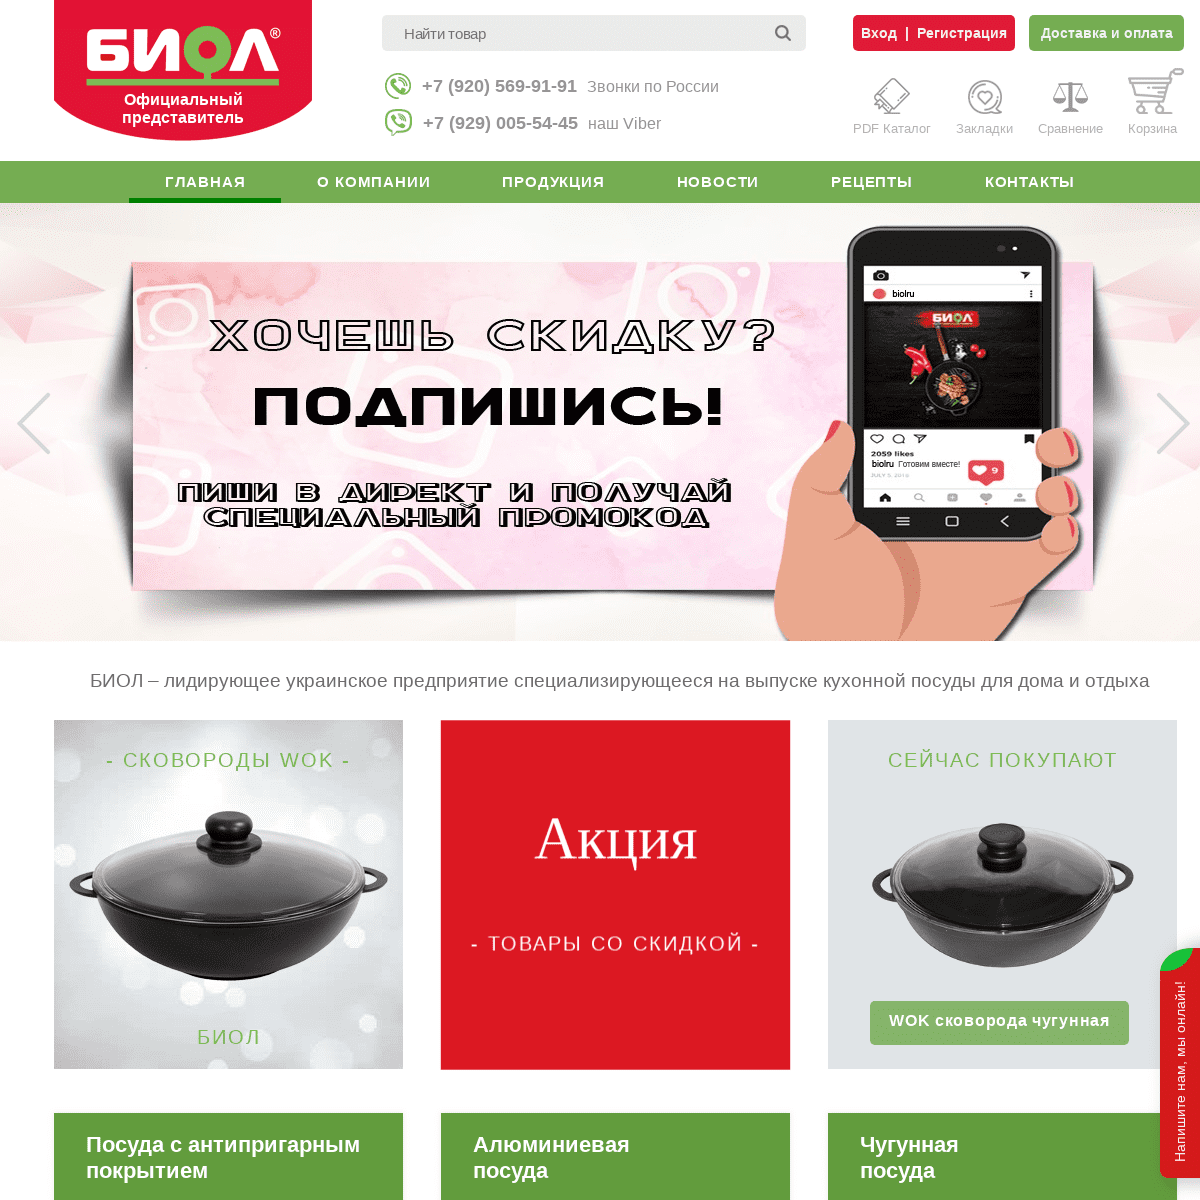 Купить посуду БИОЛ в России - официальный интернет-магазин